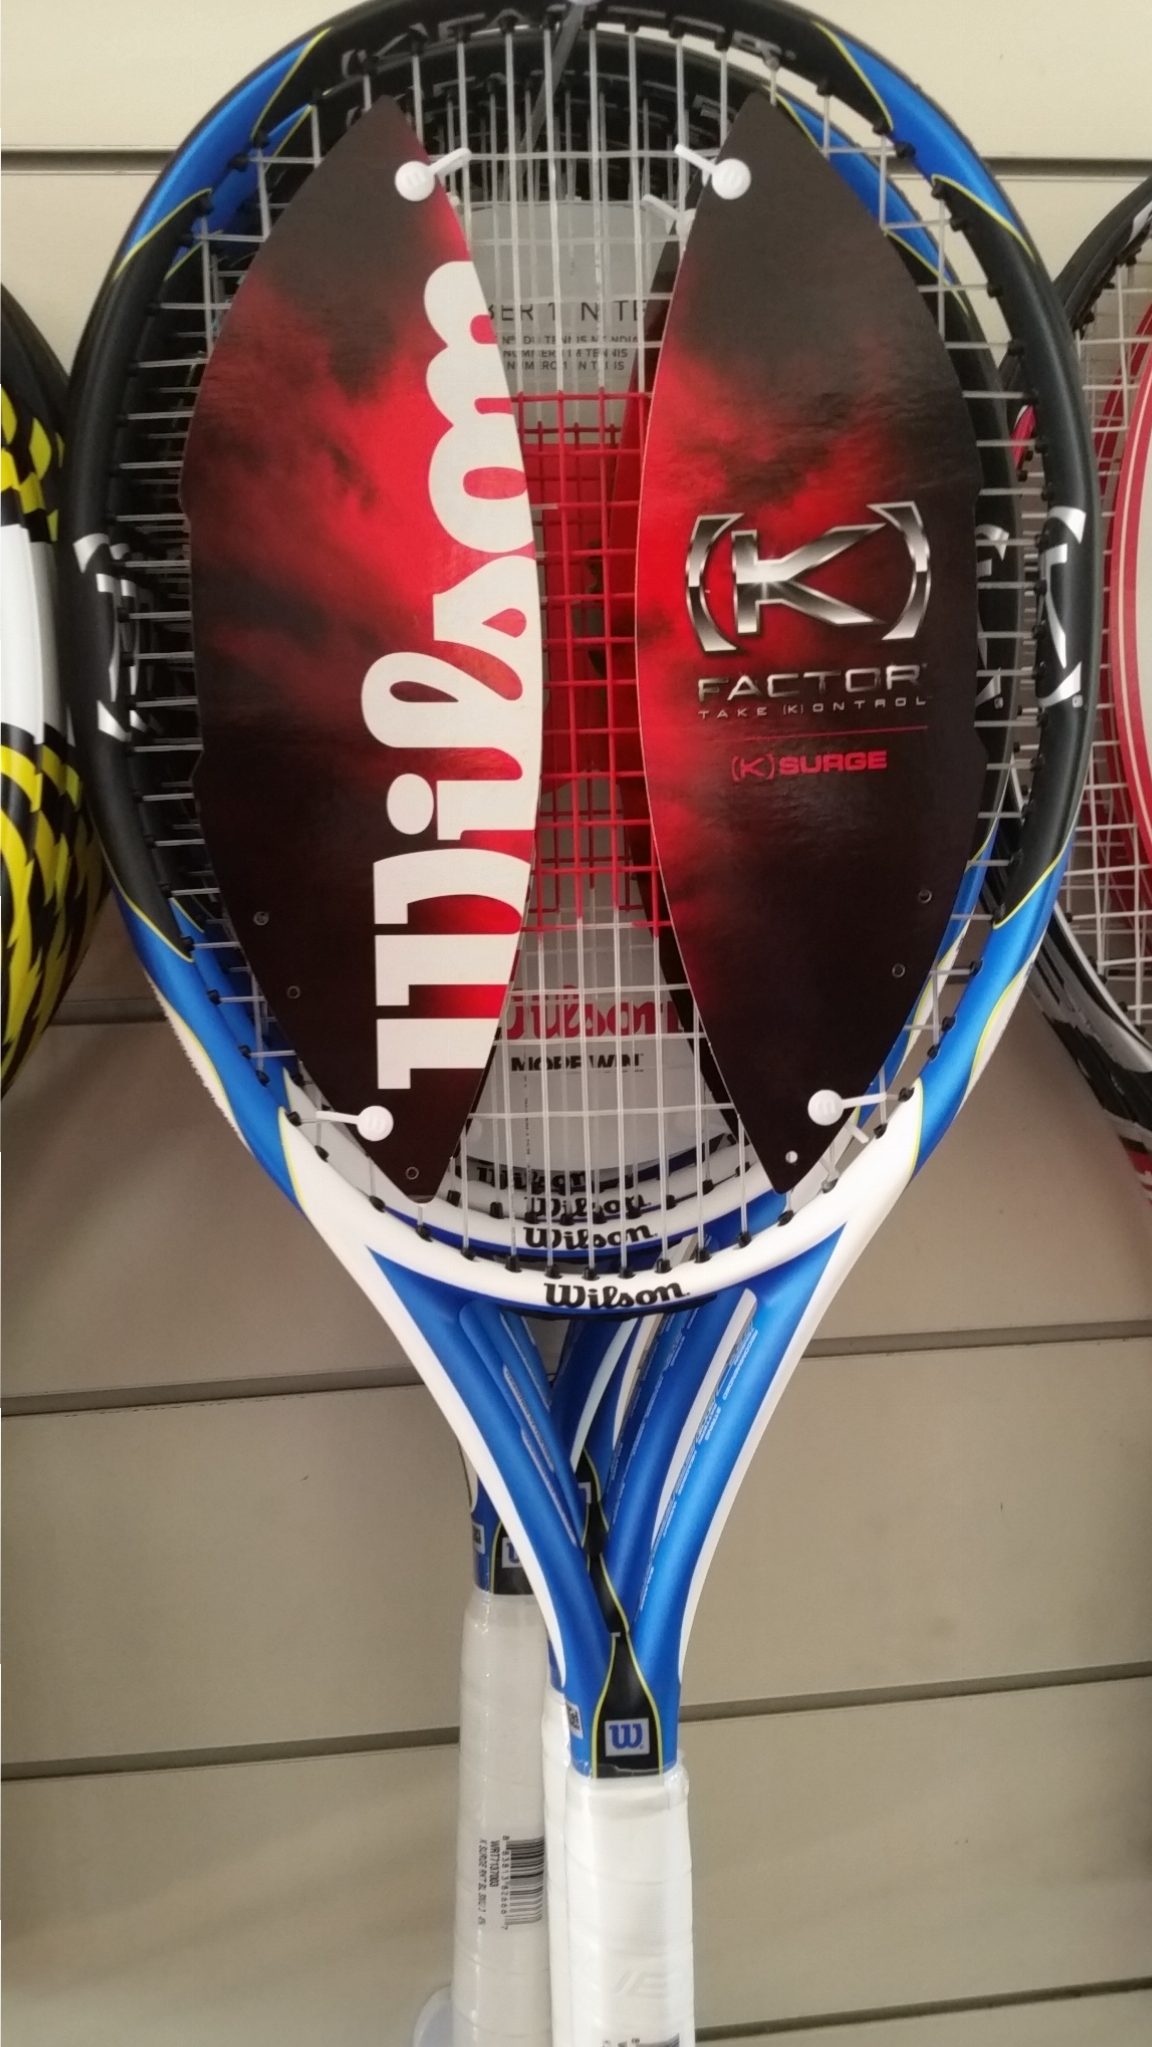 Schijn dier energie Wilson (K) Factor K Surge - Tennis Racquet | Tennis shoes | Tennis clothing